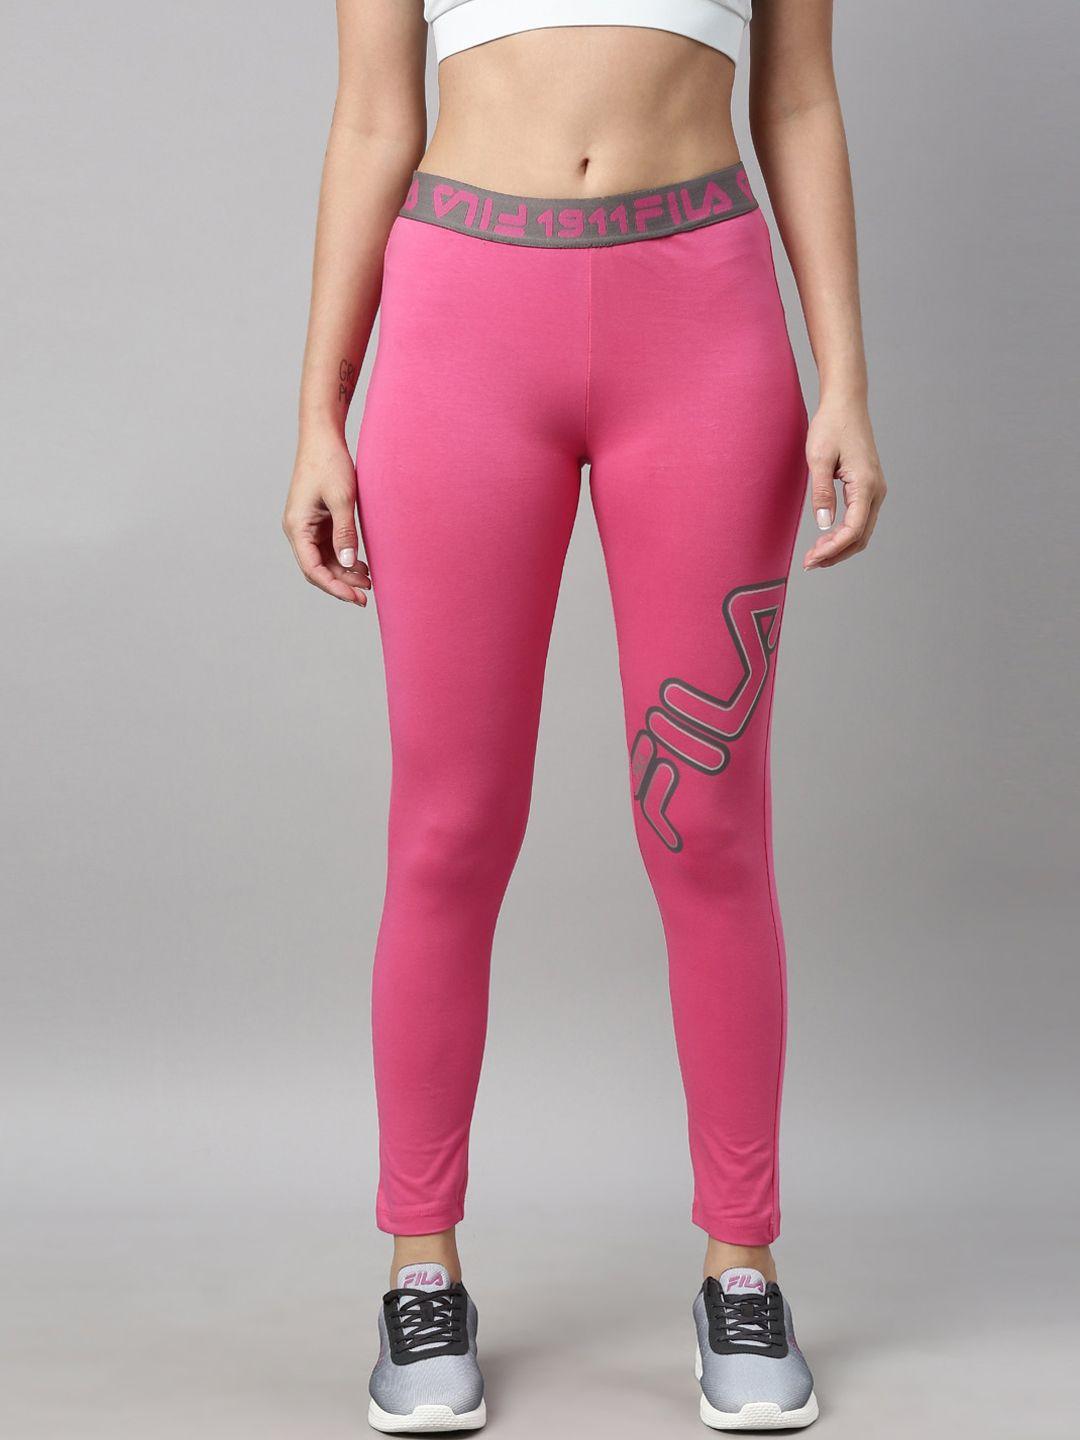 fila-women-pink-solid-pk-tasse-tights